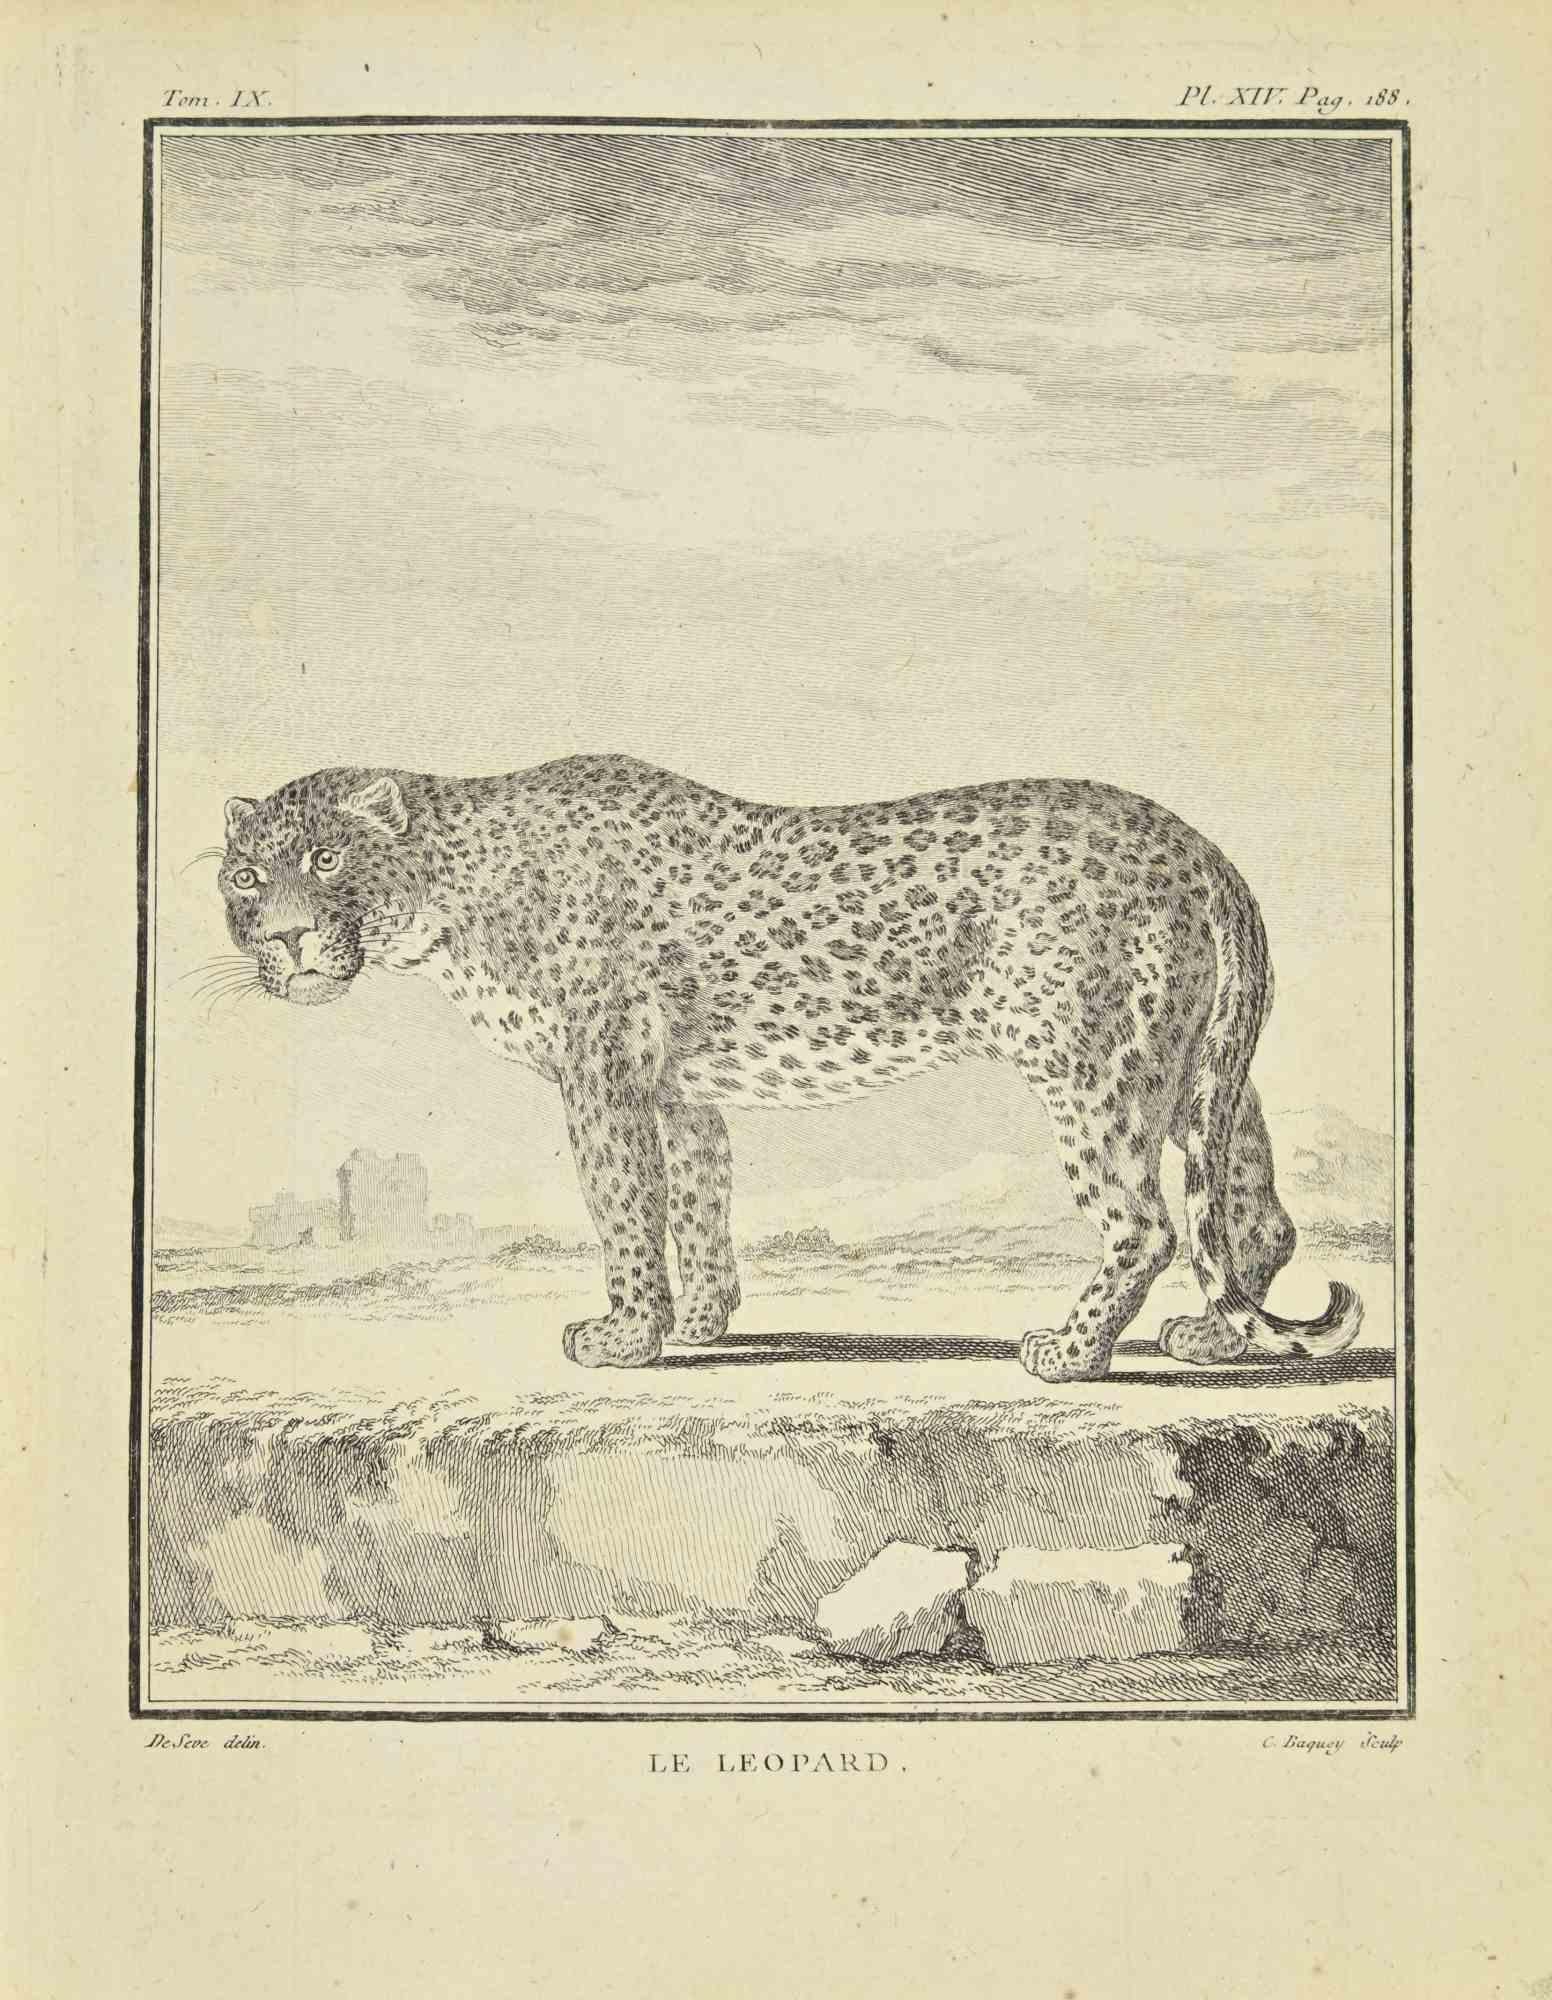 Le Leopard is an etching realized by Jean Charles Baquoy in 1771.

The artwork Belongs to the suite "Histoire naturelle, générale et particulière avec la description du Cabinet du Roi". Paris: Imprimerie Royale, 1749-1771. The Artist's signature is